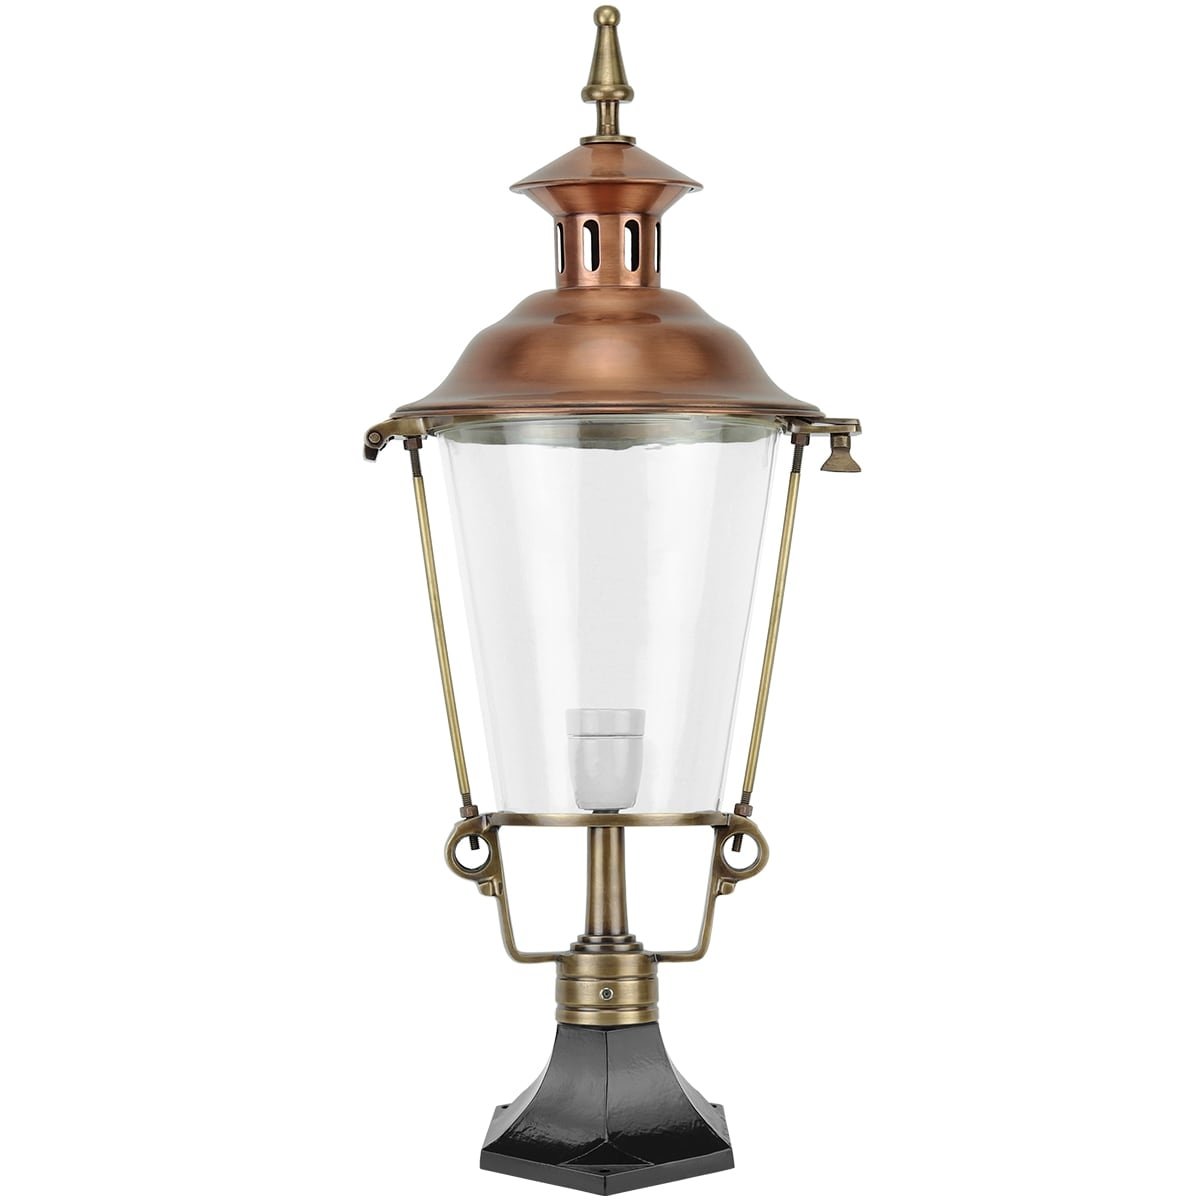 Garden Lighting Classic Rural Atmosphere lamp De Vecht copper - 70 cm